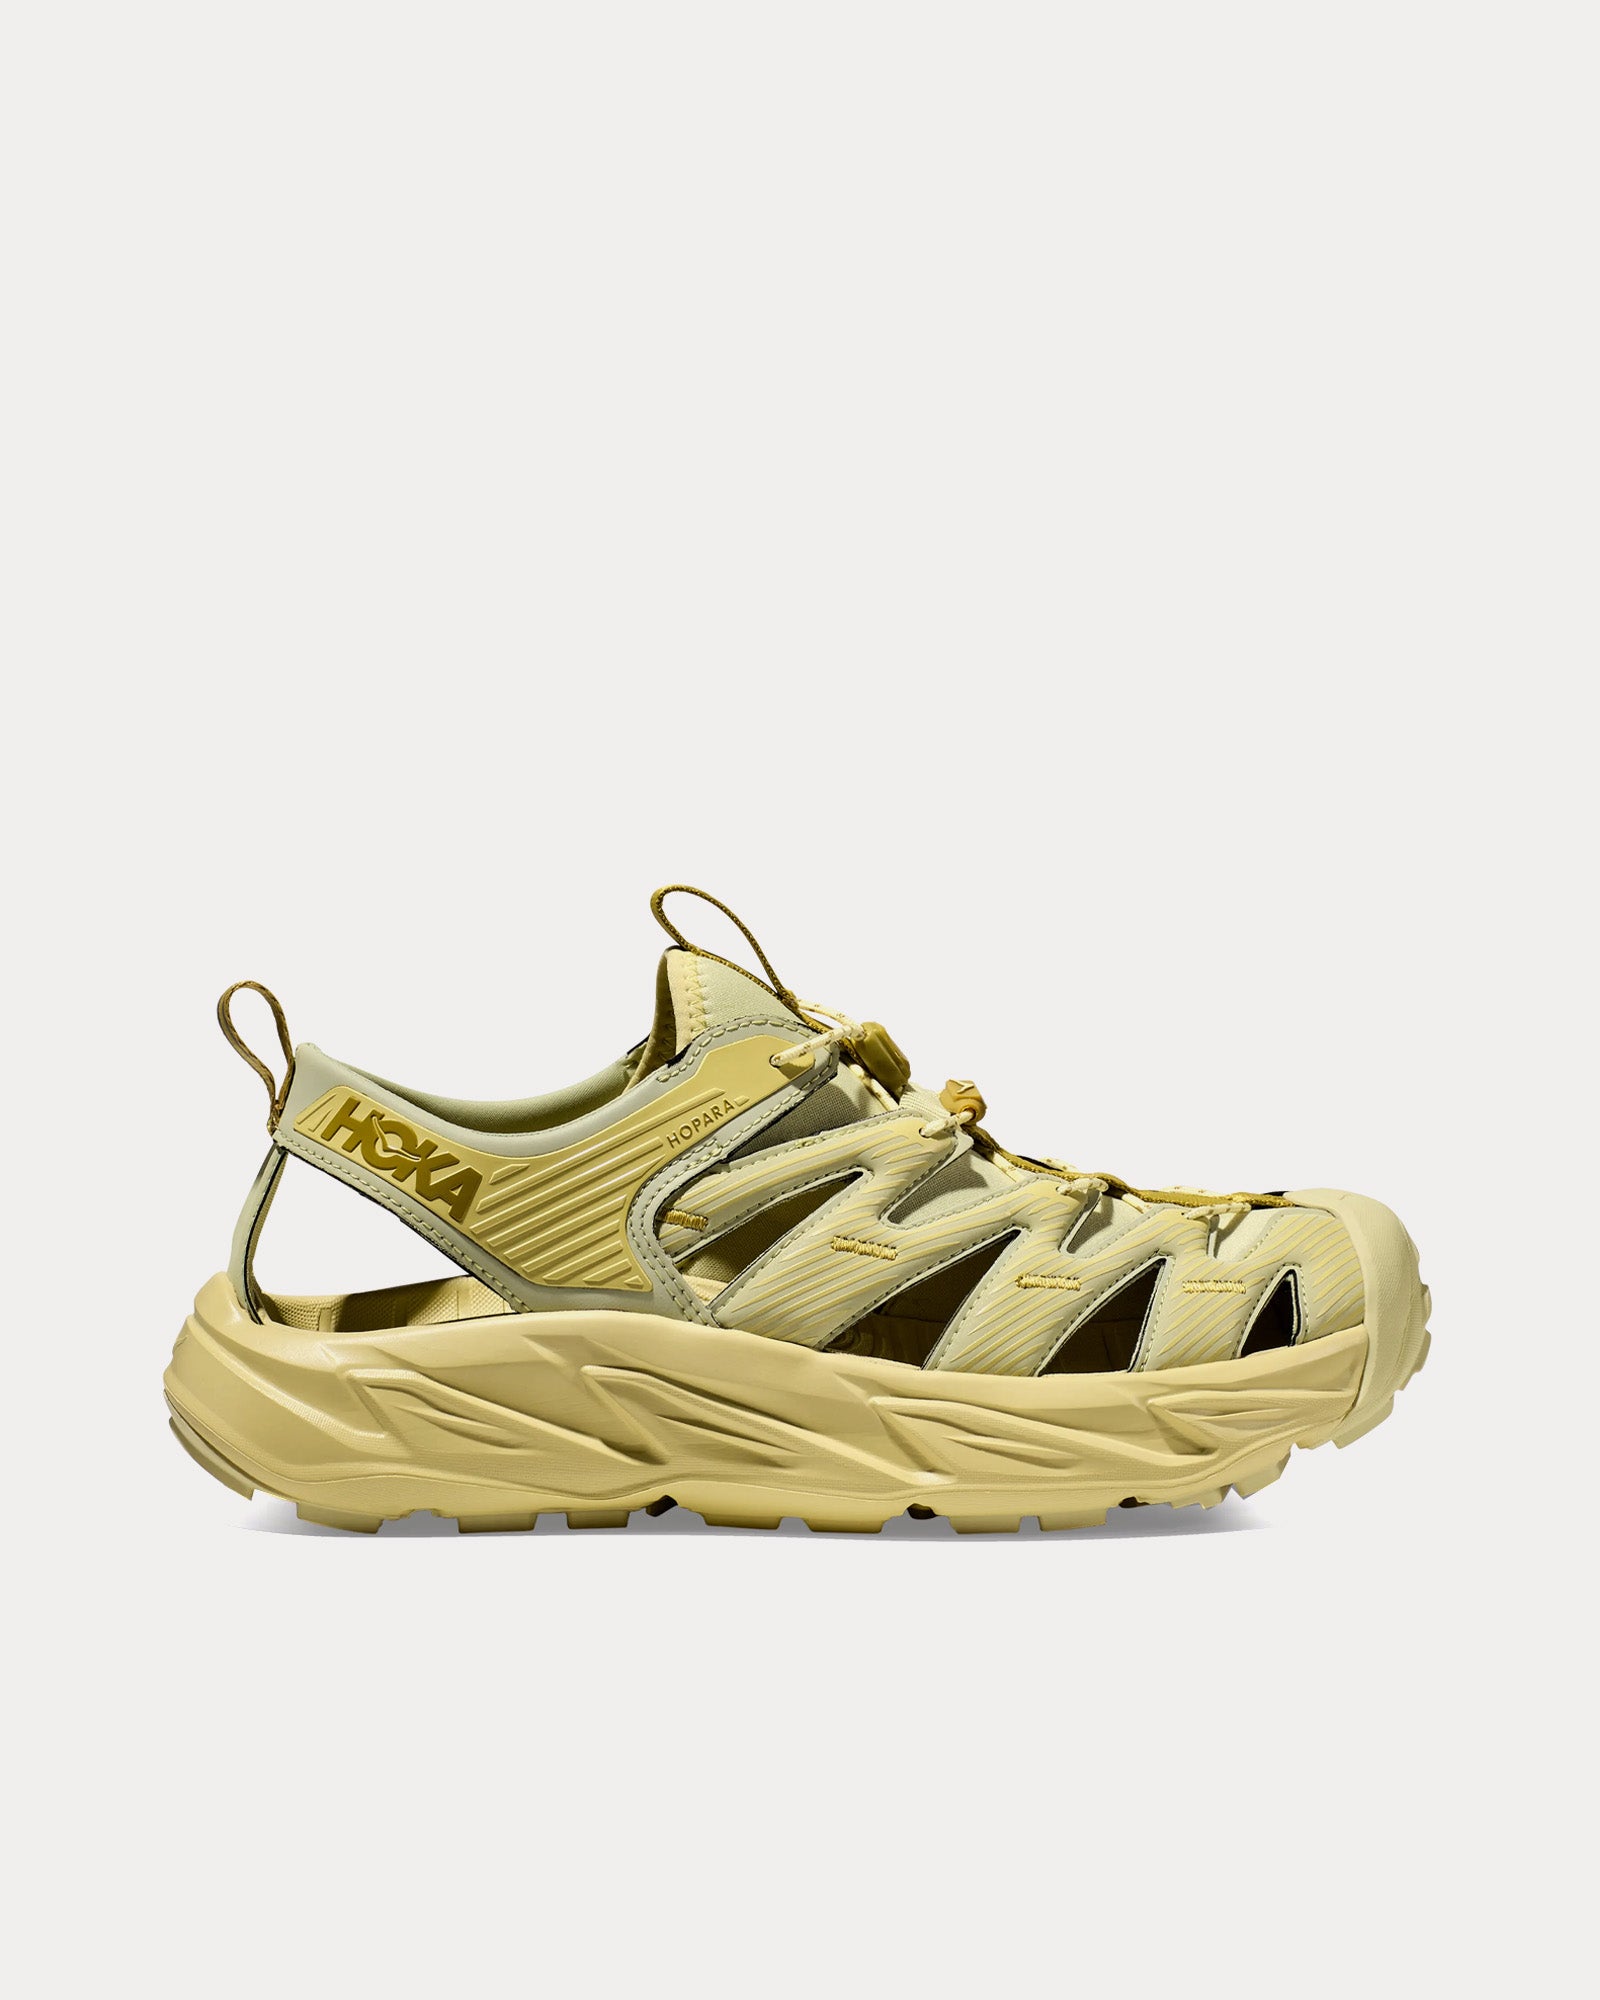 Hoka - Hopara Celery Root / Celery Root Slip On Sneakers